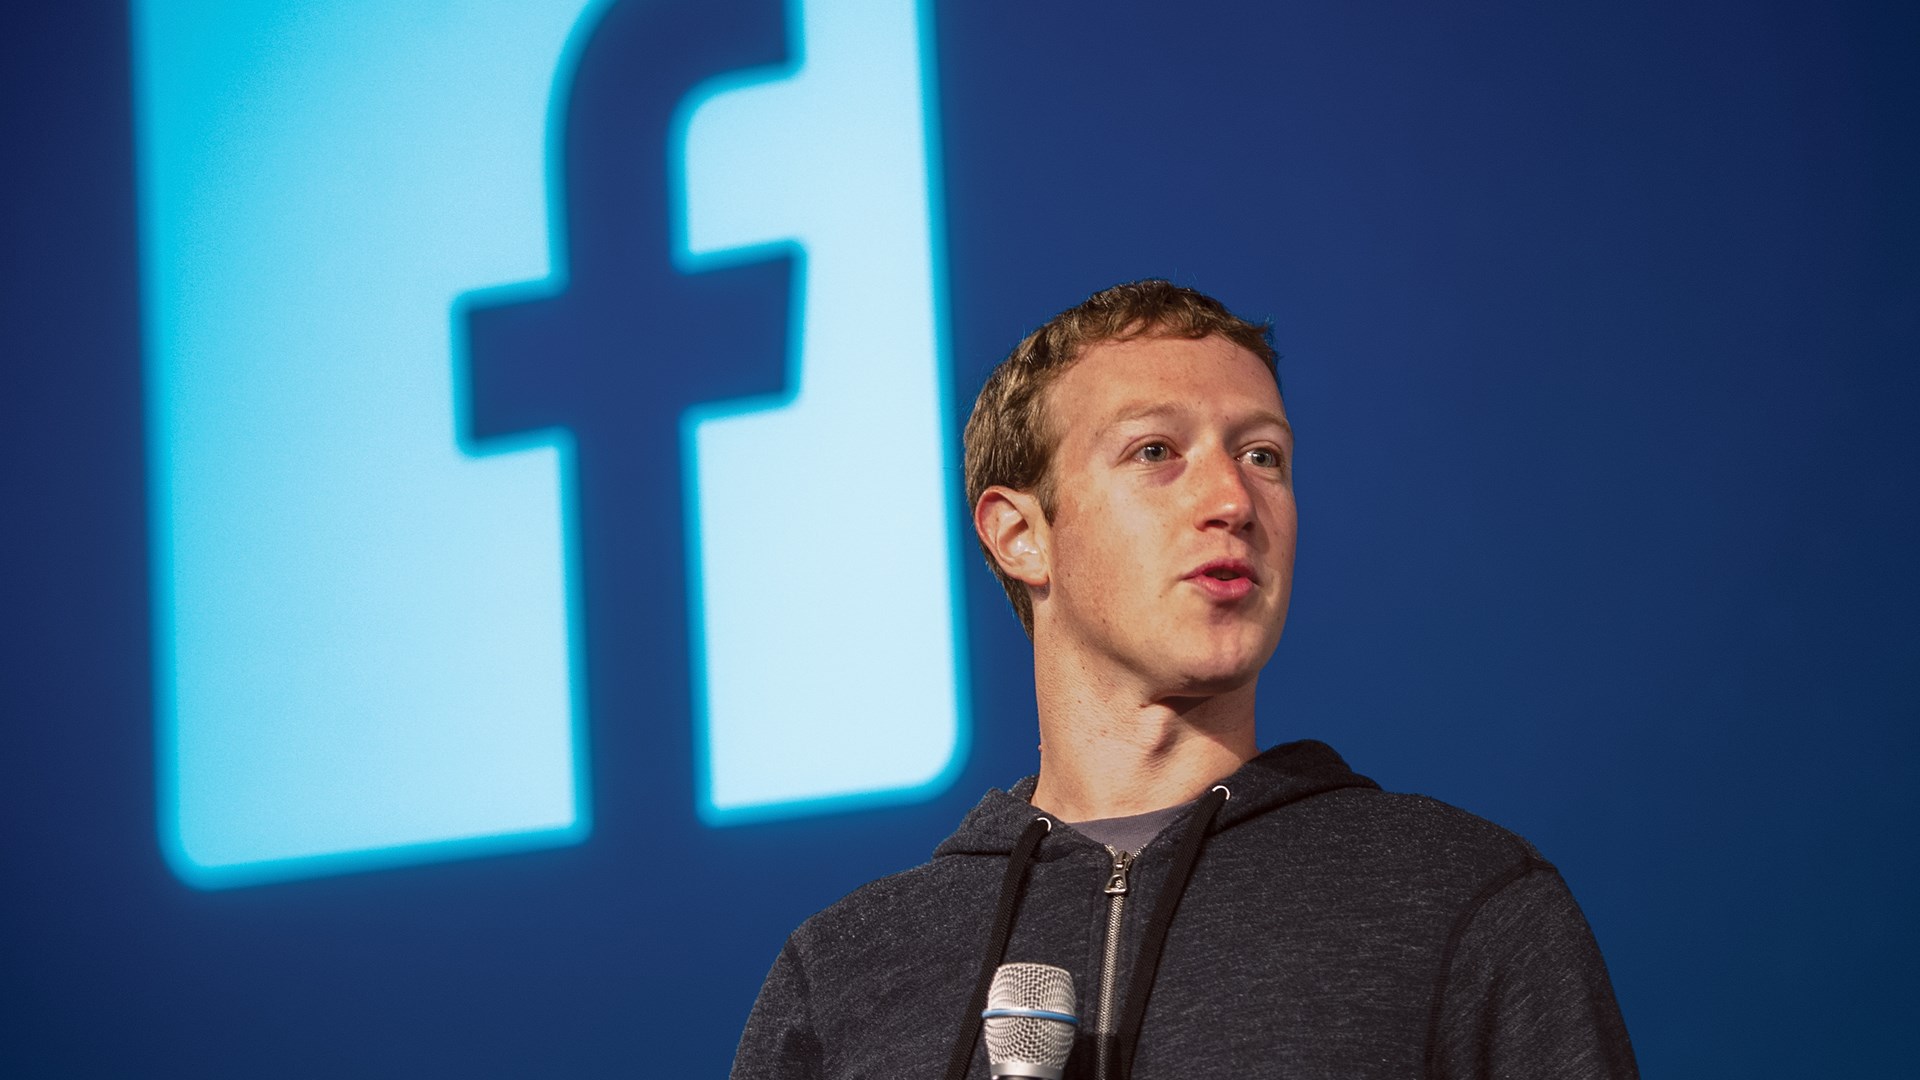 Σοκ από την “ομολογία” Ζάκερμπεργκ για το σκάνδαλο του Facebook: Θα χρειαστούν χρόνια για να λυθεί το πρόβλημα